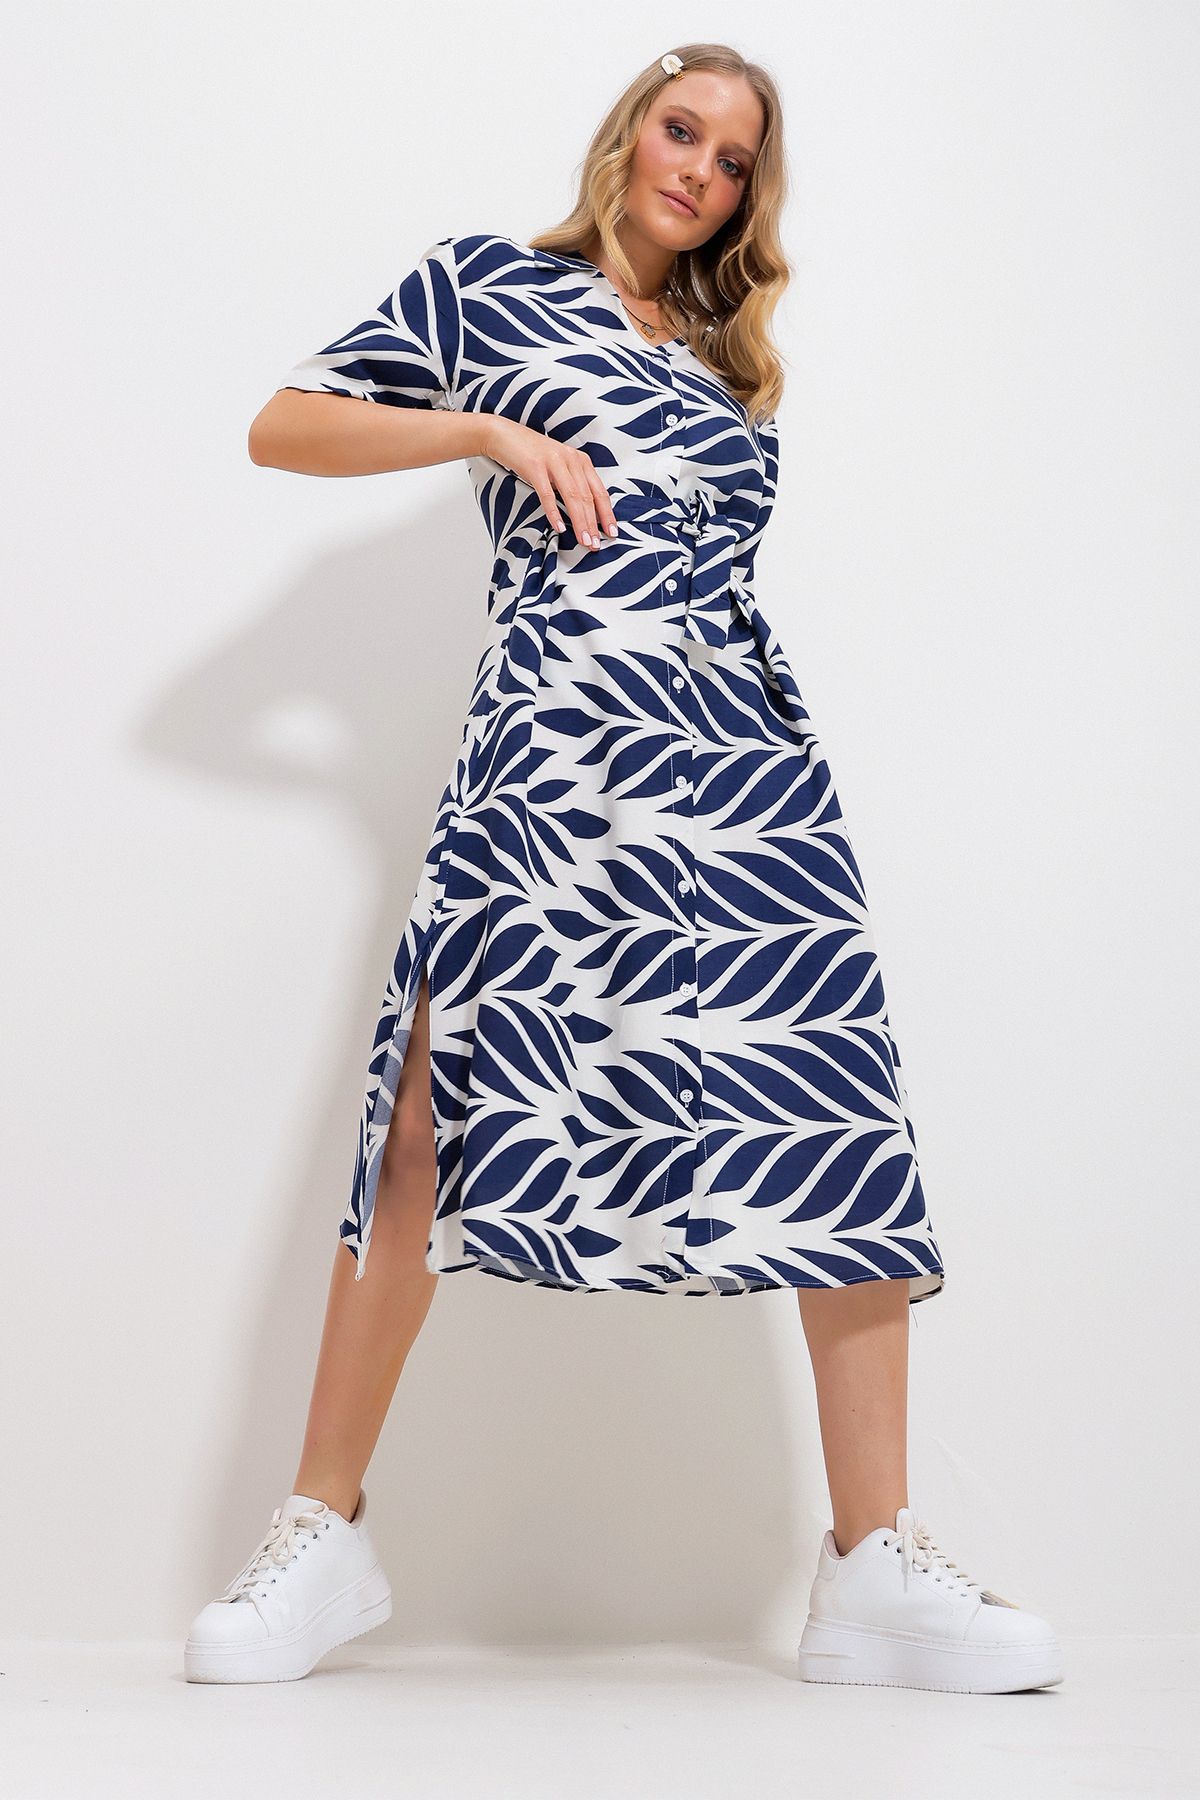 Trend Alaçatı Stili Kadın Lacivert Yaprak Desenli Kısa Kol Gömlek Elbise Alc-X11736